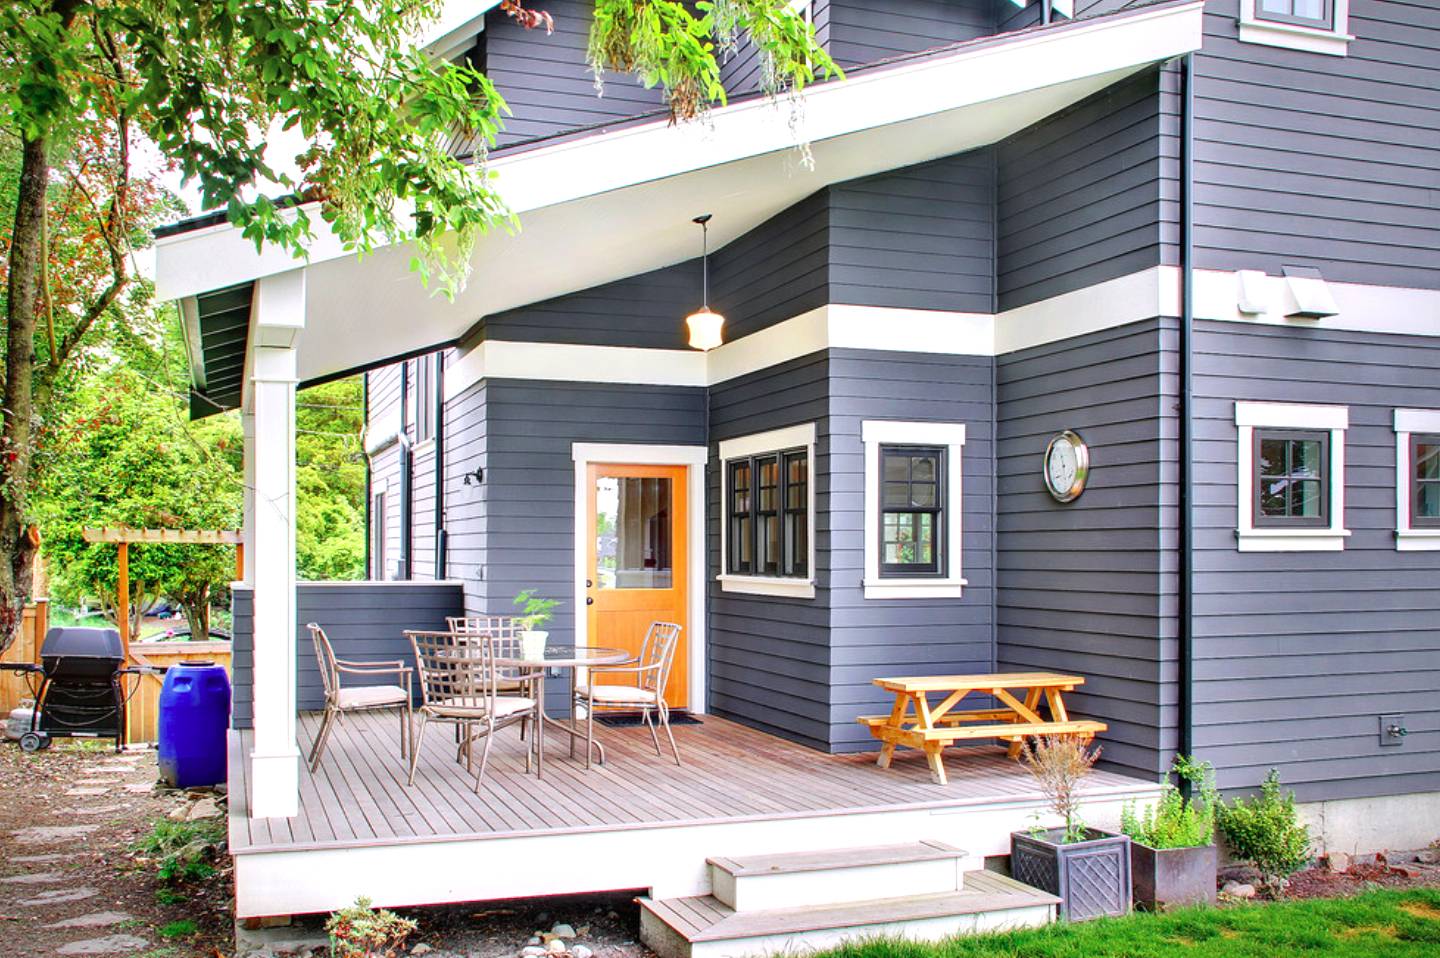 Как покрасить дом снаружи? Цвет деревянного дома своими руками - Обзор